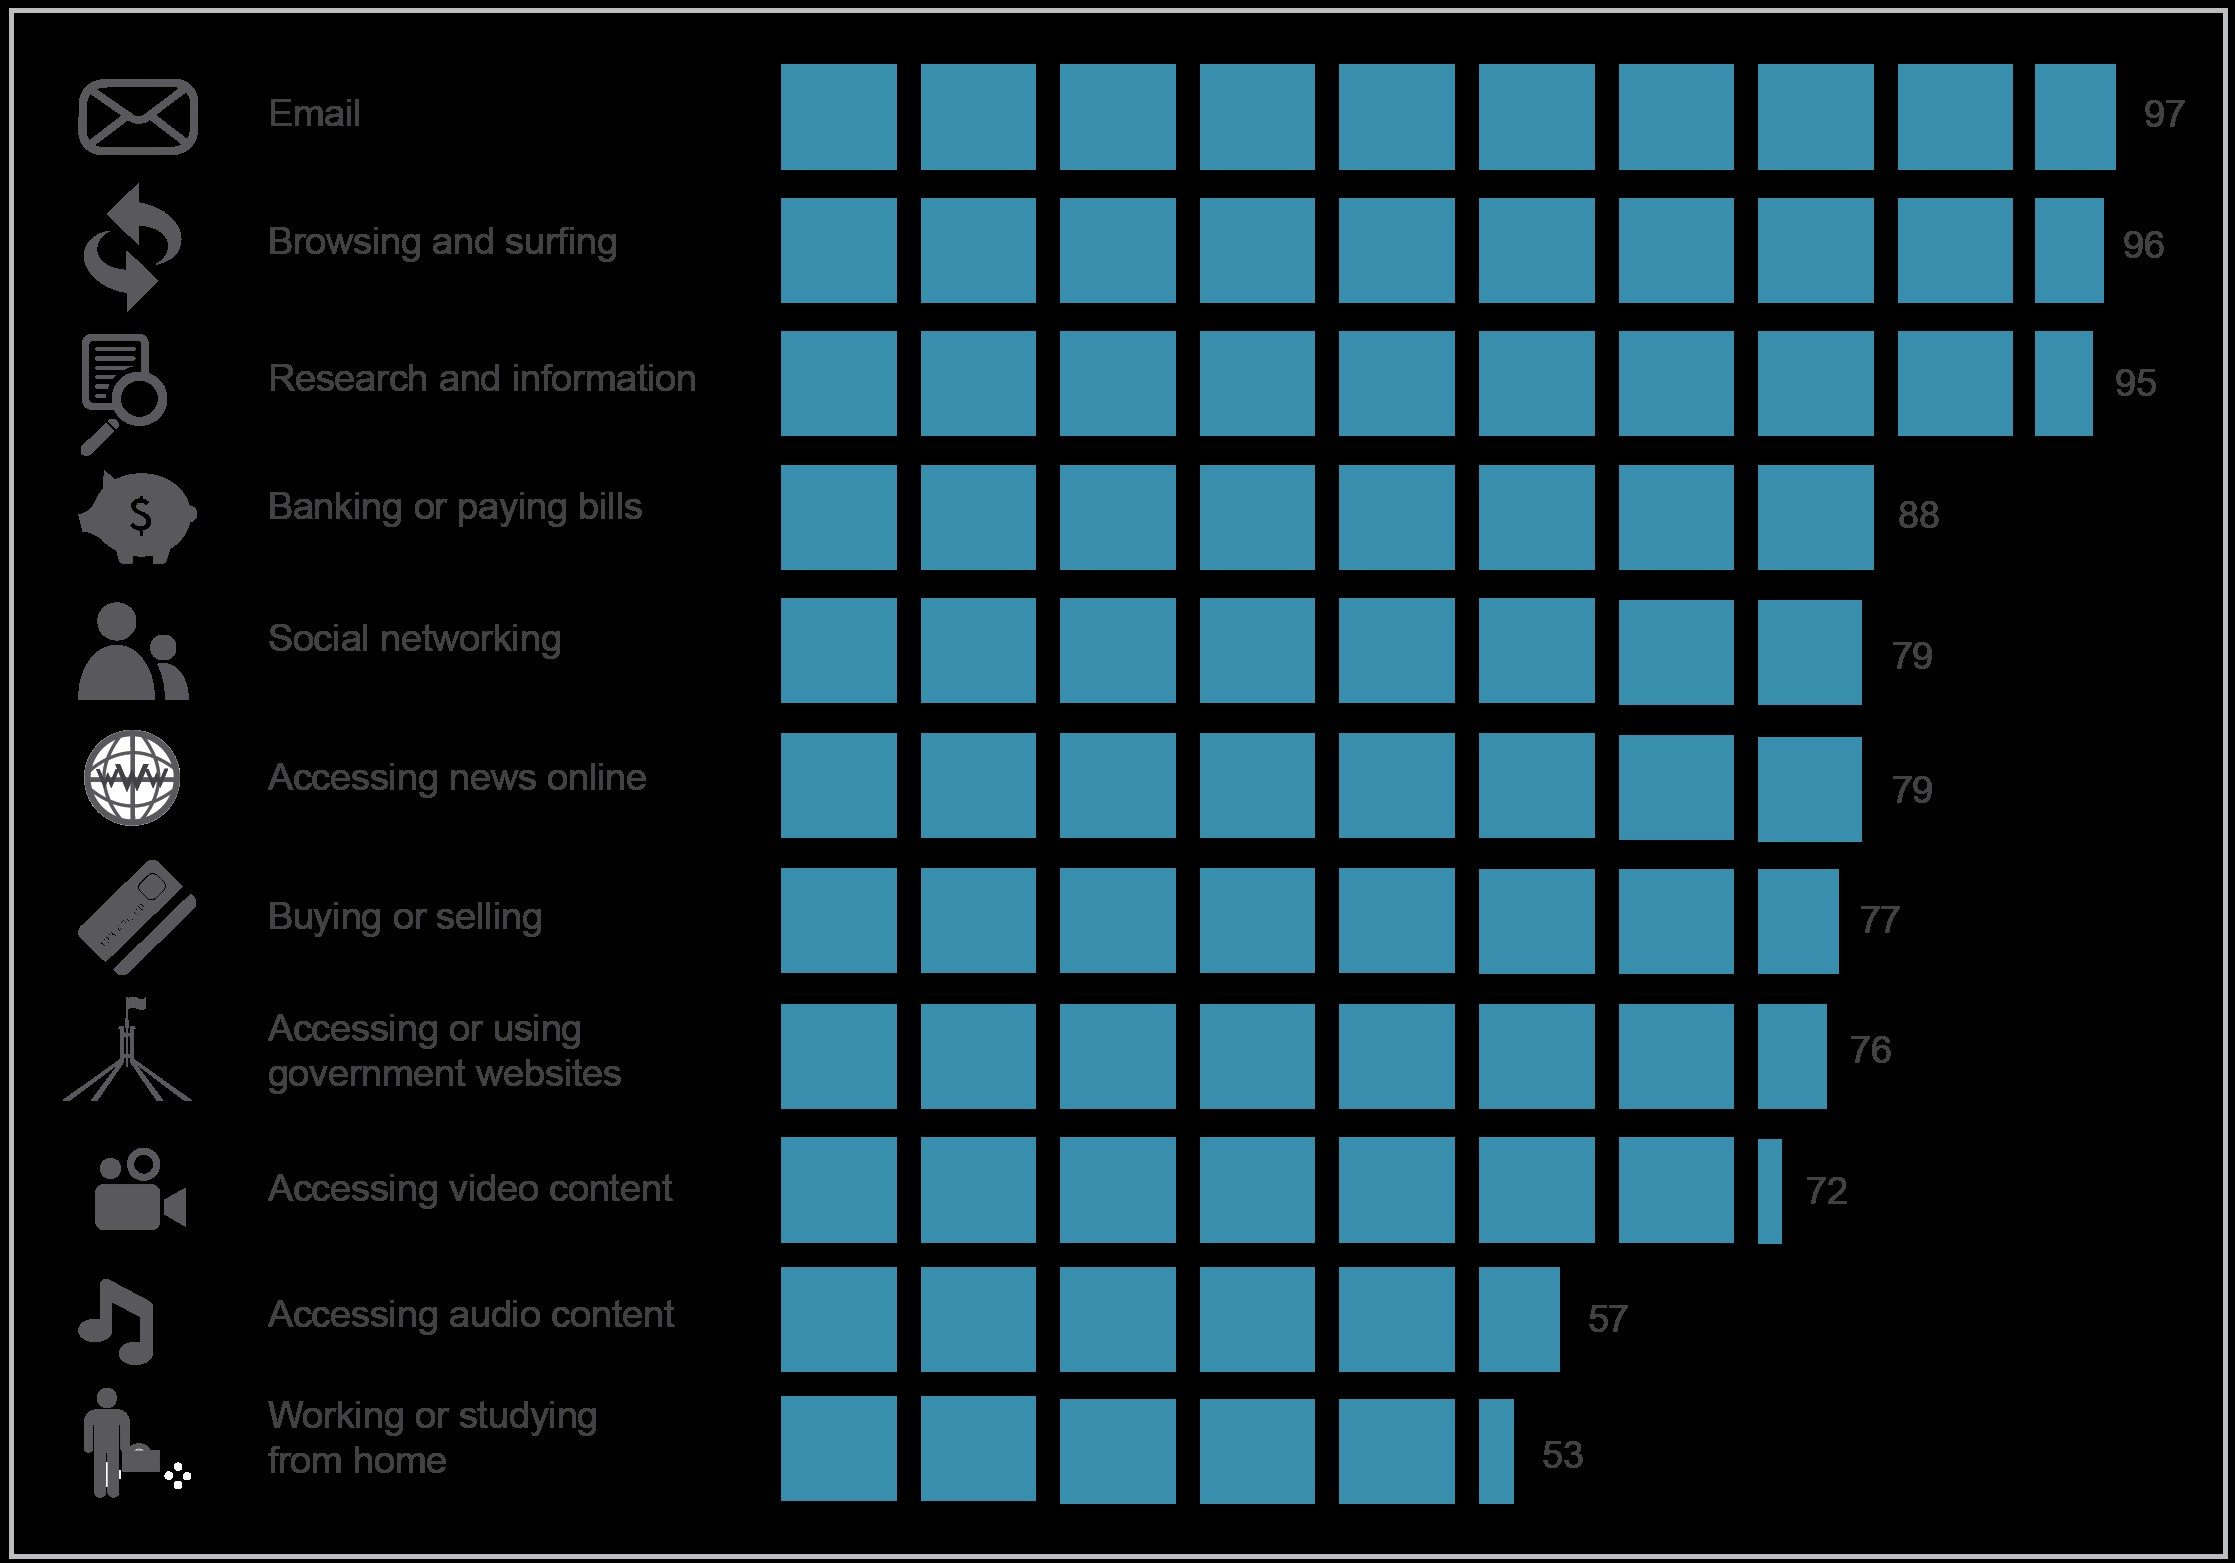 Bar chart of percentage of respondents versus various online activities